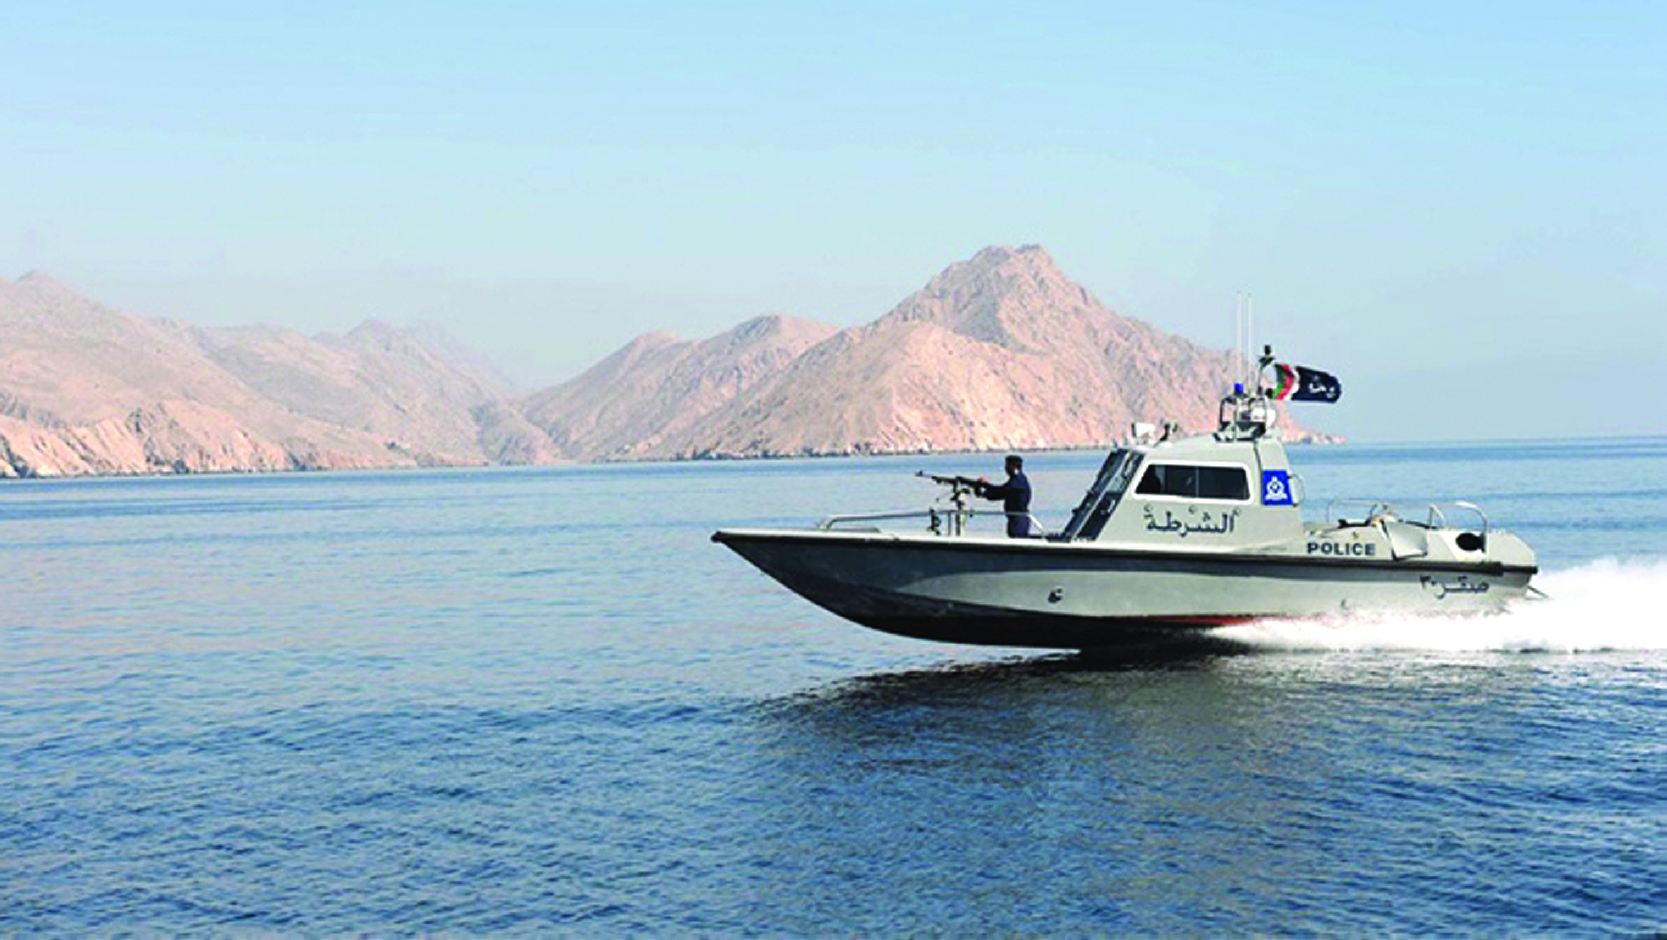 Citizens, residents praise Oman’s public services